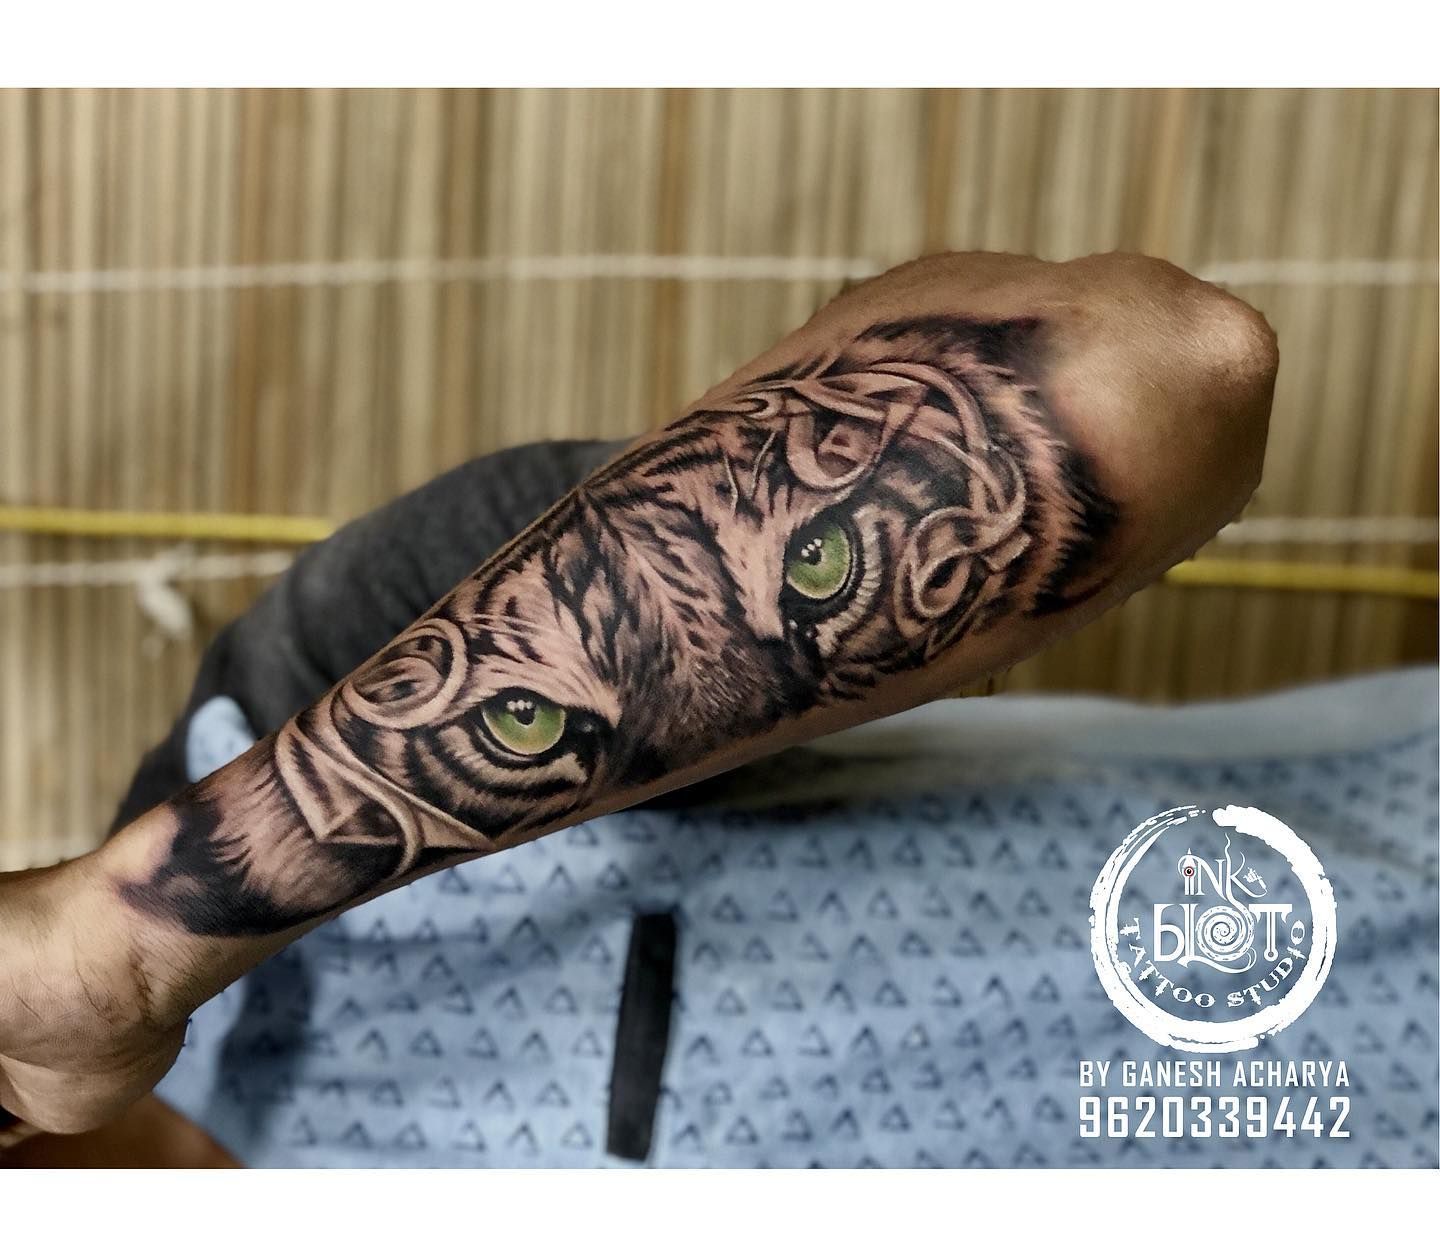 Tattoo uploaded by InkBlot Tattoo studio  tiger eye tattoos by inkblot  tattoos contact 9620339442  Tattoodo